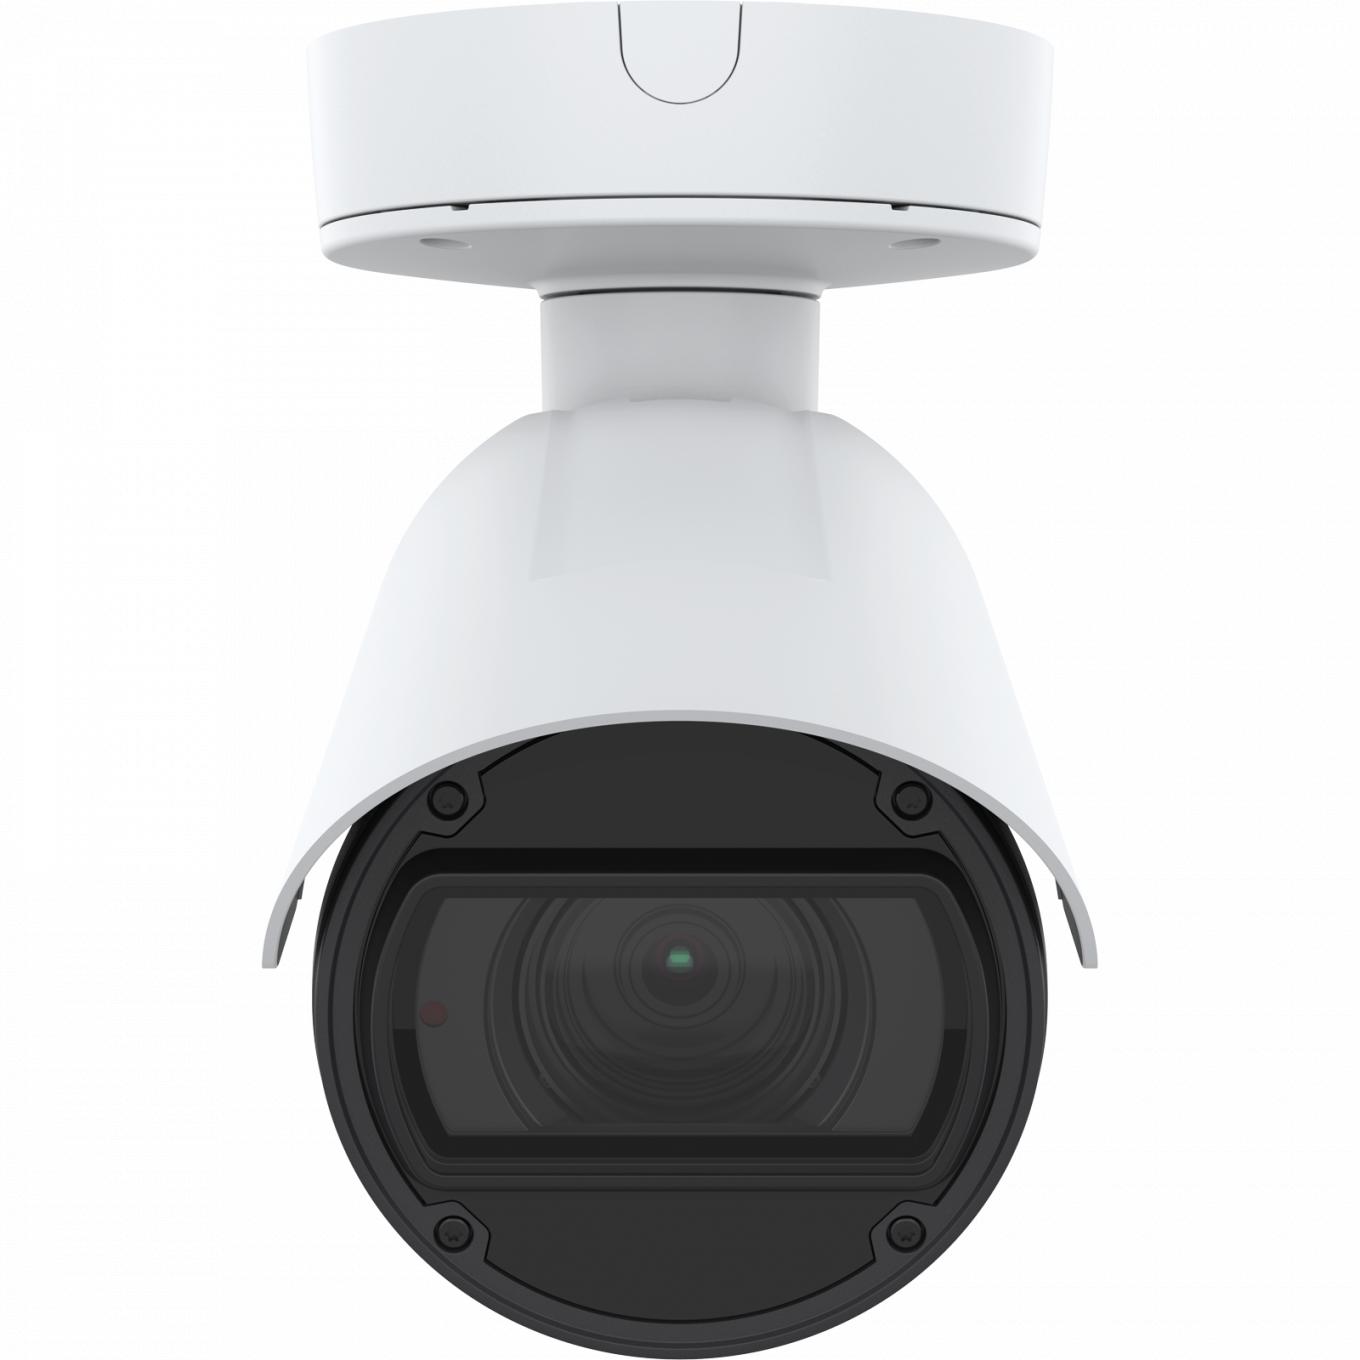 La AXIS Q1786-LE IP Camera tiene OptimizedIR. El producto se muestra con vista frontal. 